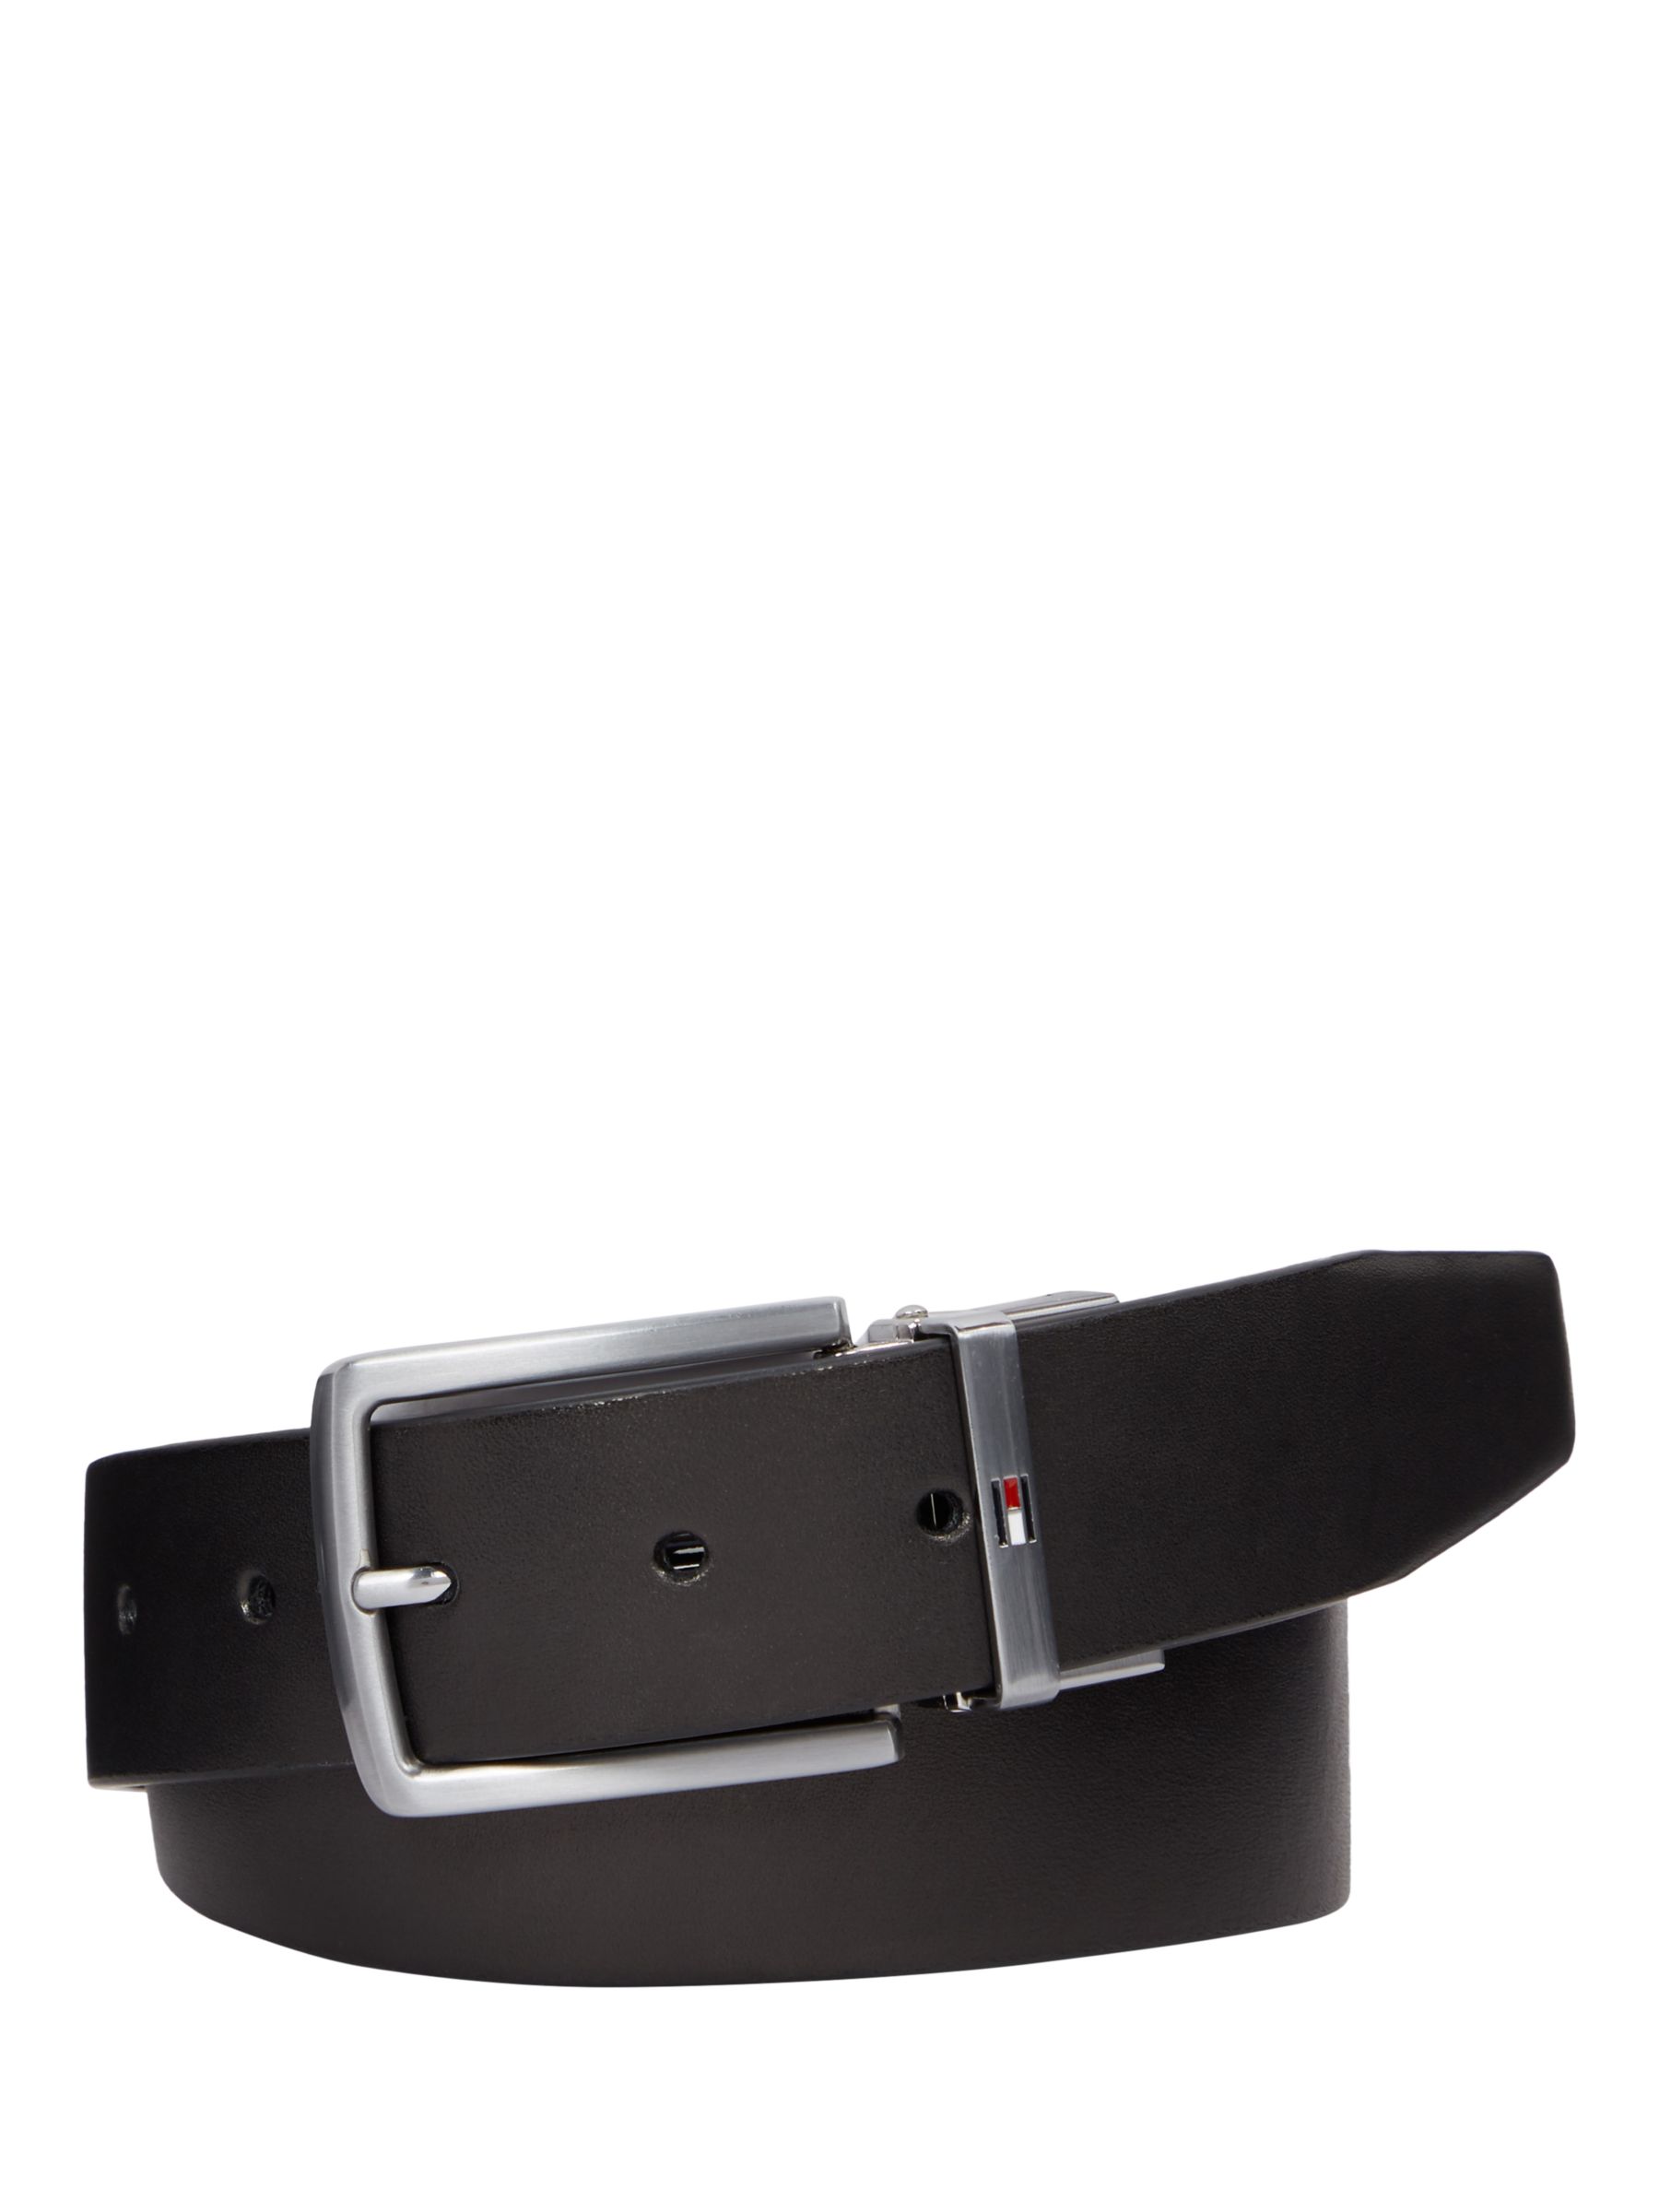 Tommy Hilfiger Denton Reversible Leather Belt, Black/Corporate, 31